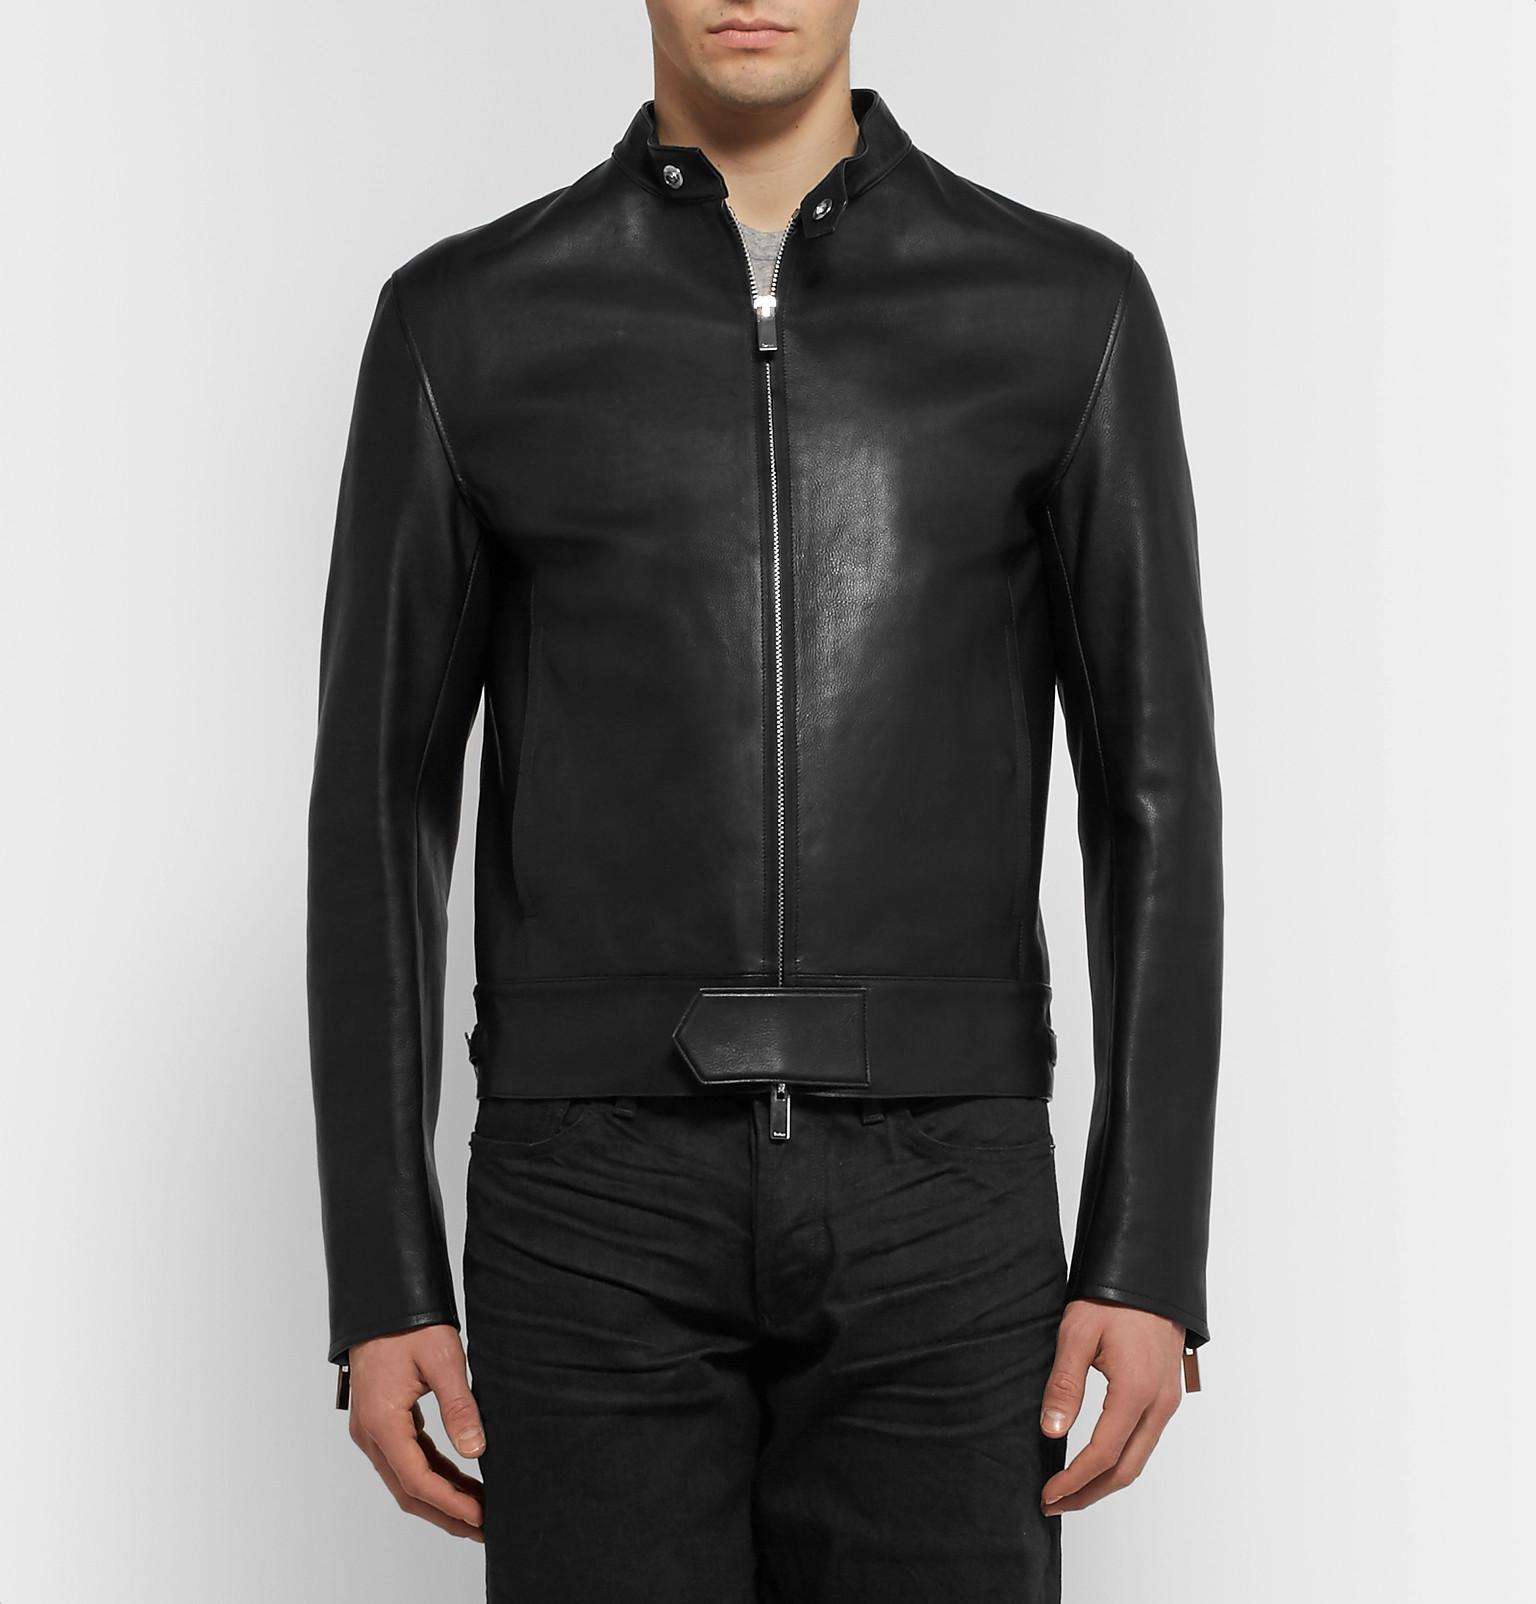 Berluti Unlined Leather Biker Jacket in Black for Men - Lyst